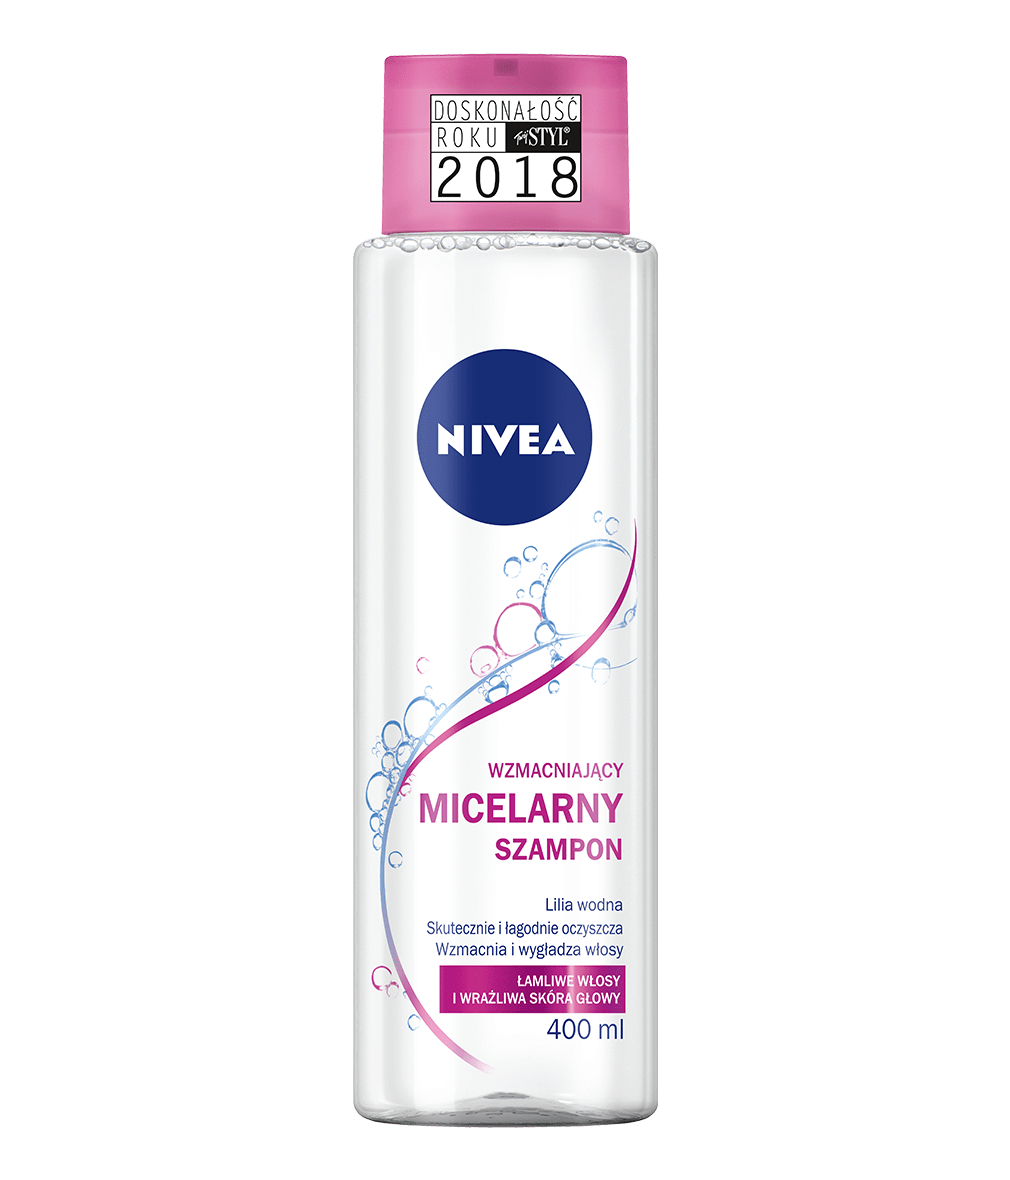 nivea szampon micelarny sklad